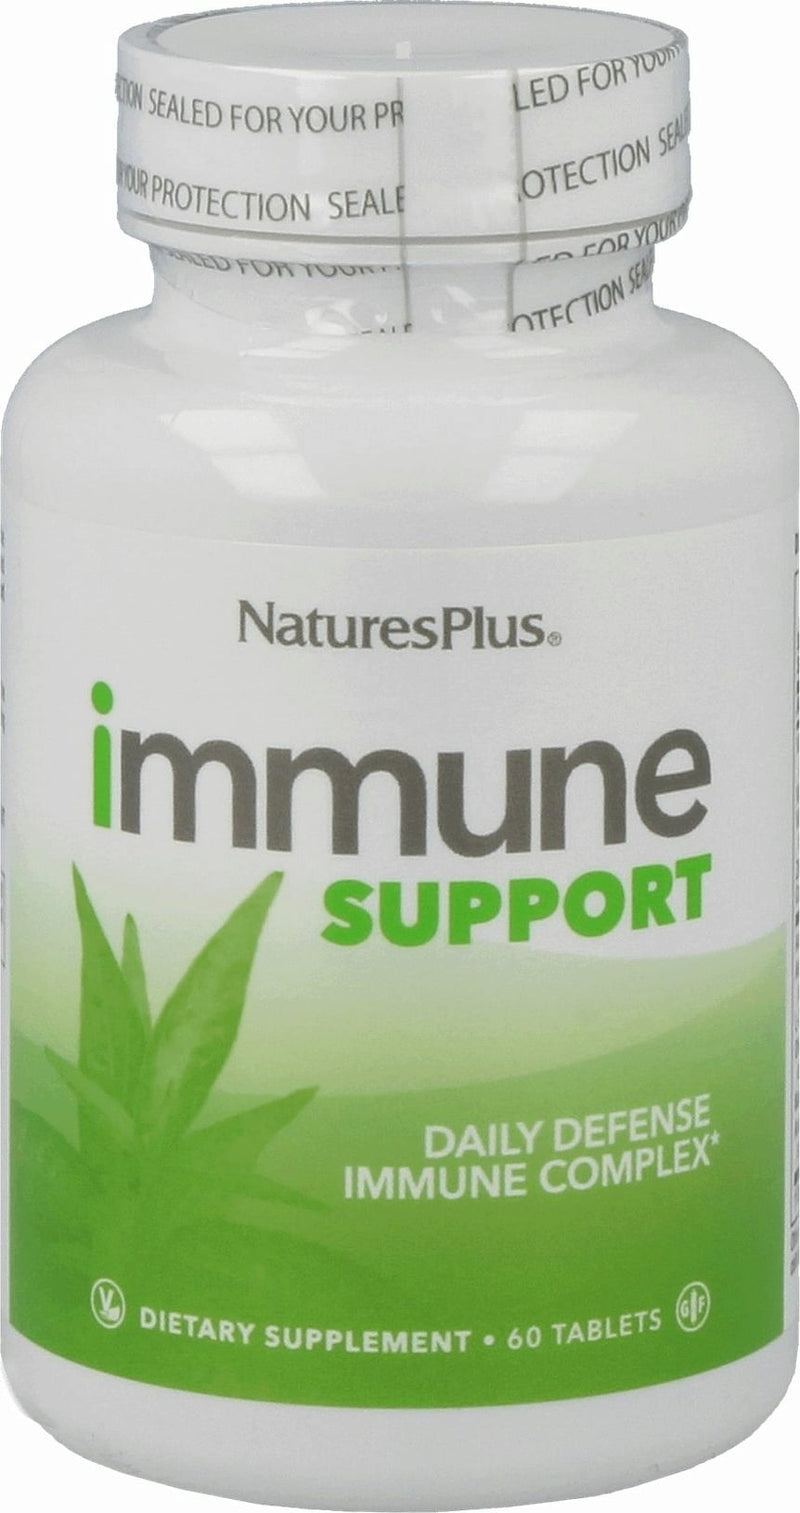 The Natures Plus Immune Support 60 Capsules